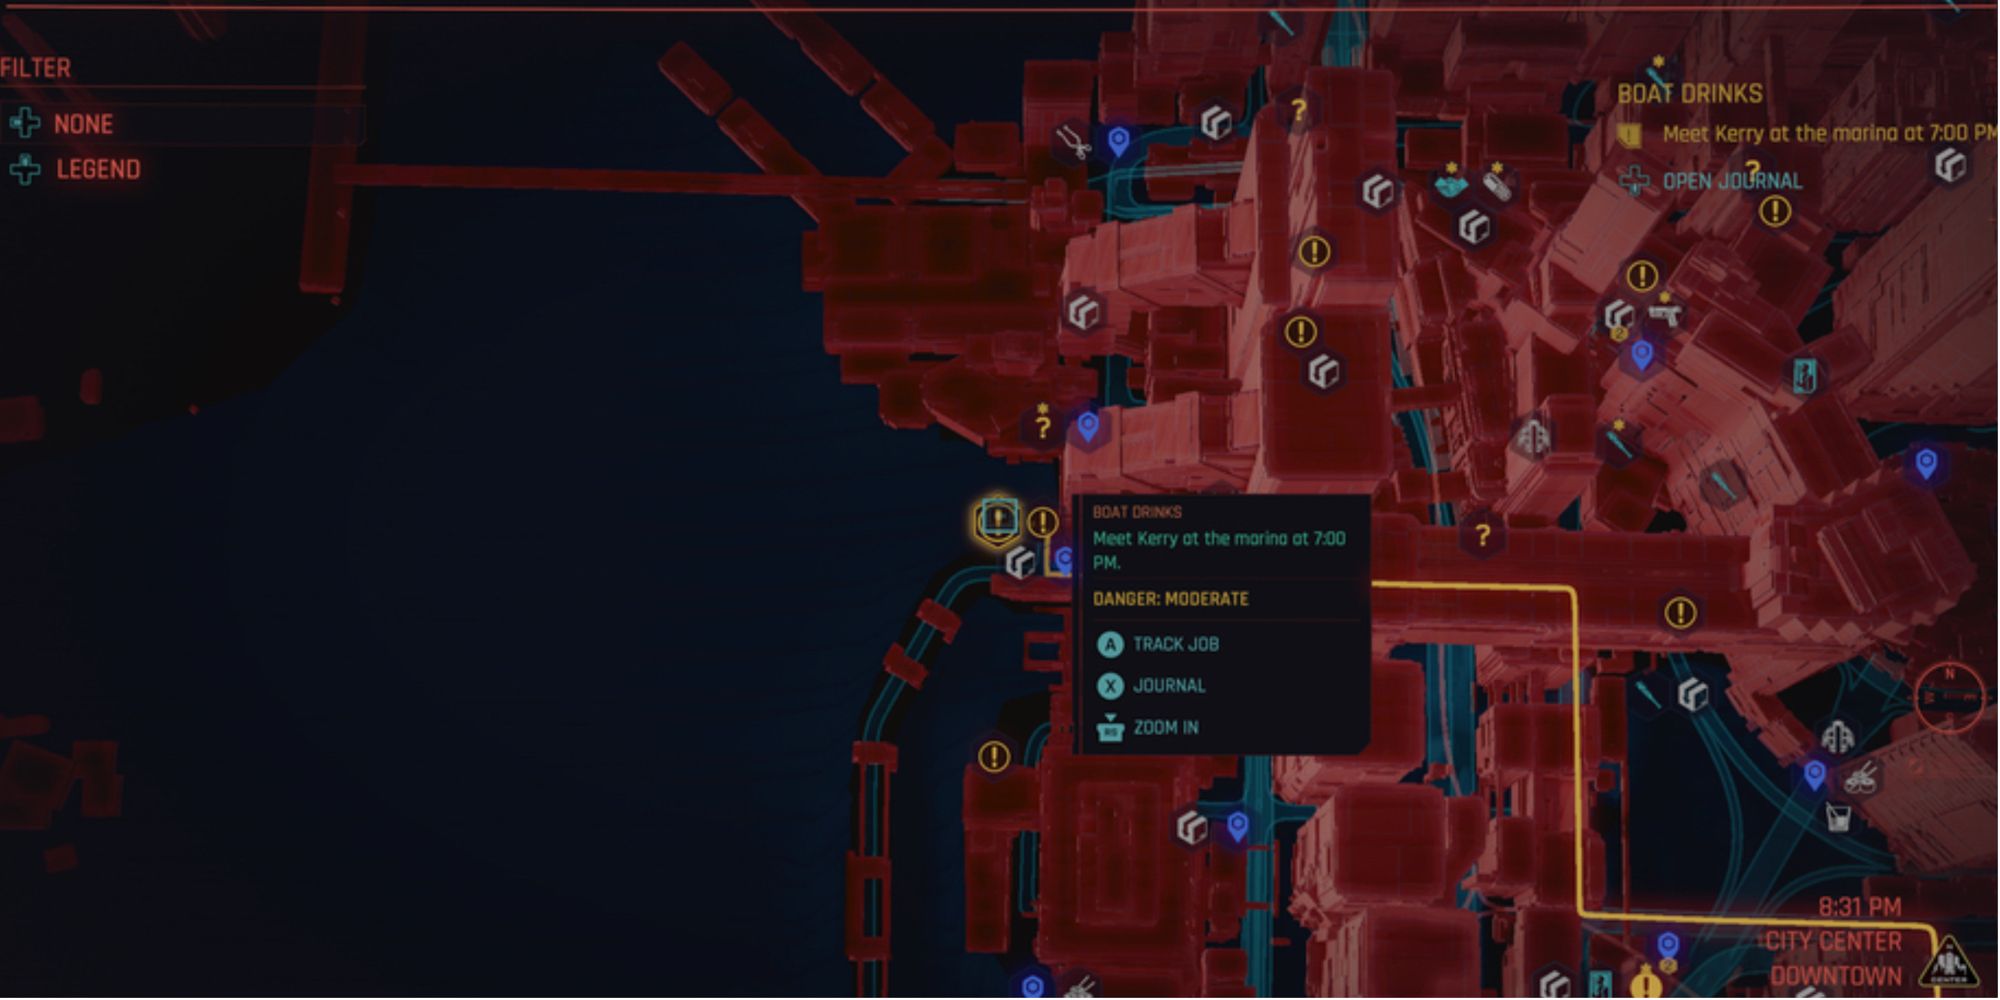 Map marker for boat drinks cyberpunk 2077